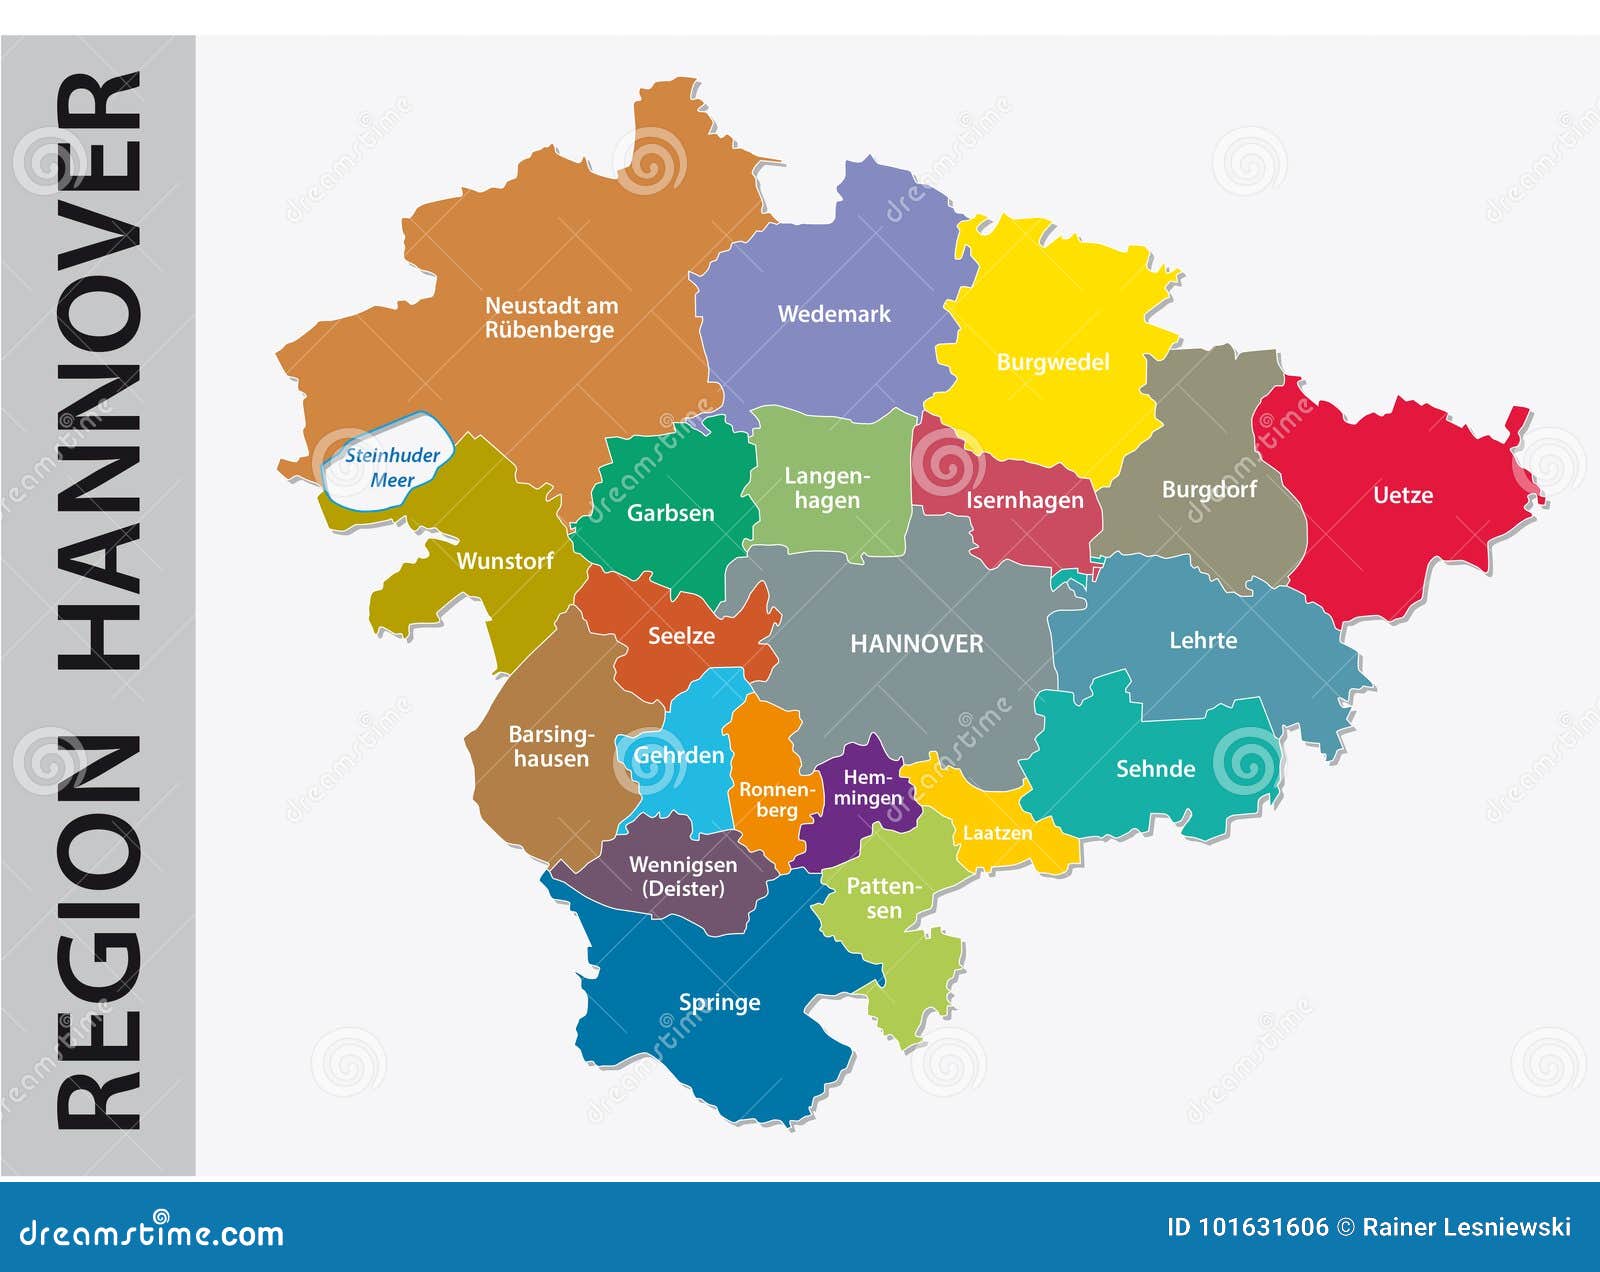 hannover region karte Administrative And Political Map Of Region Hannover In German Language Stock Vector Illustration Of Alsdorf District 101631606 hannover region karte